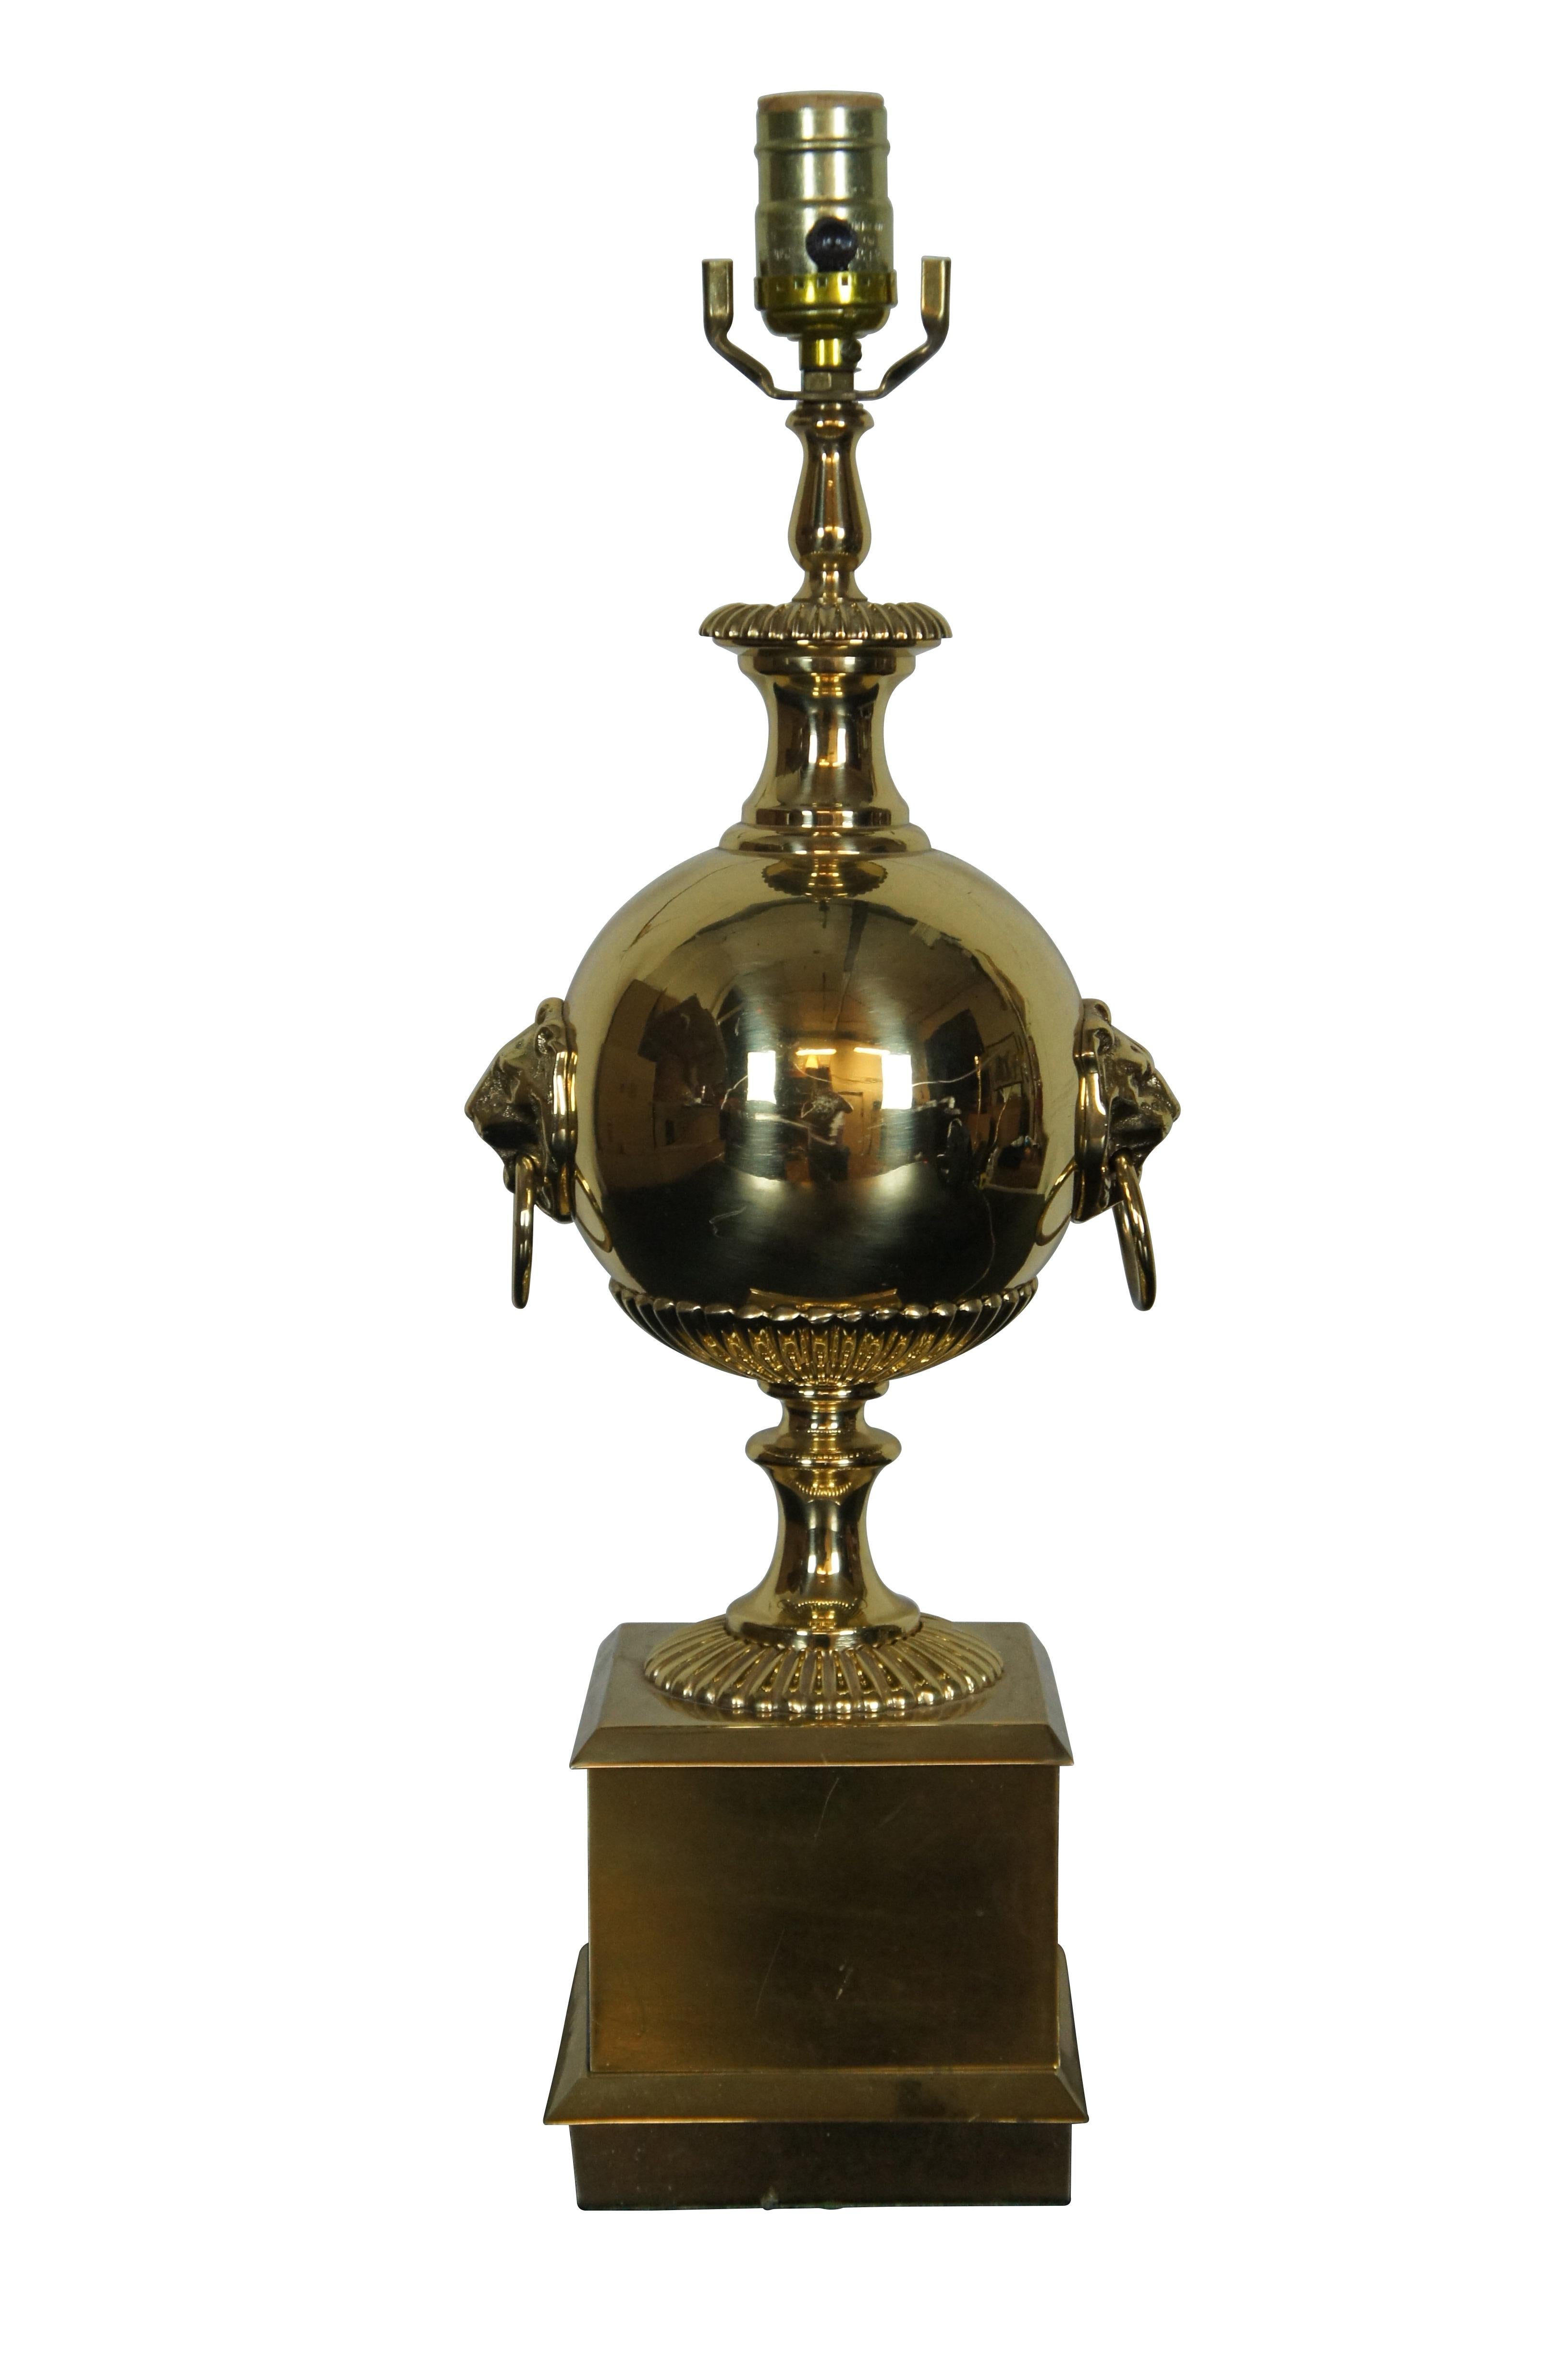 Lampe trophée vintage en laiton en forme de boulet de canon avec un corps rond en forme d'urne, des heurtoirs en forme de tête de lion et une base carrée sur piédestal.

DIMENSIONS :
6